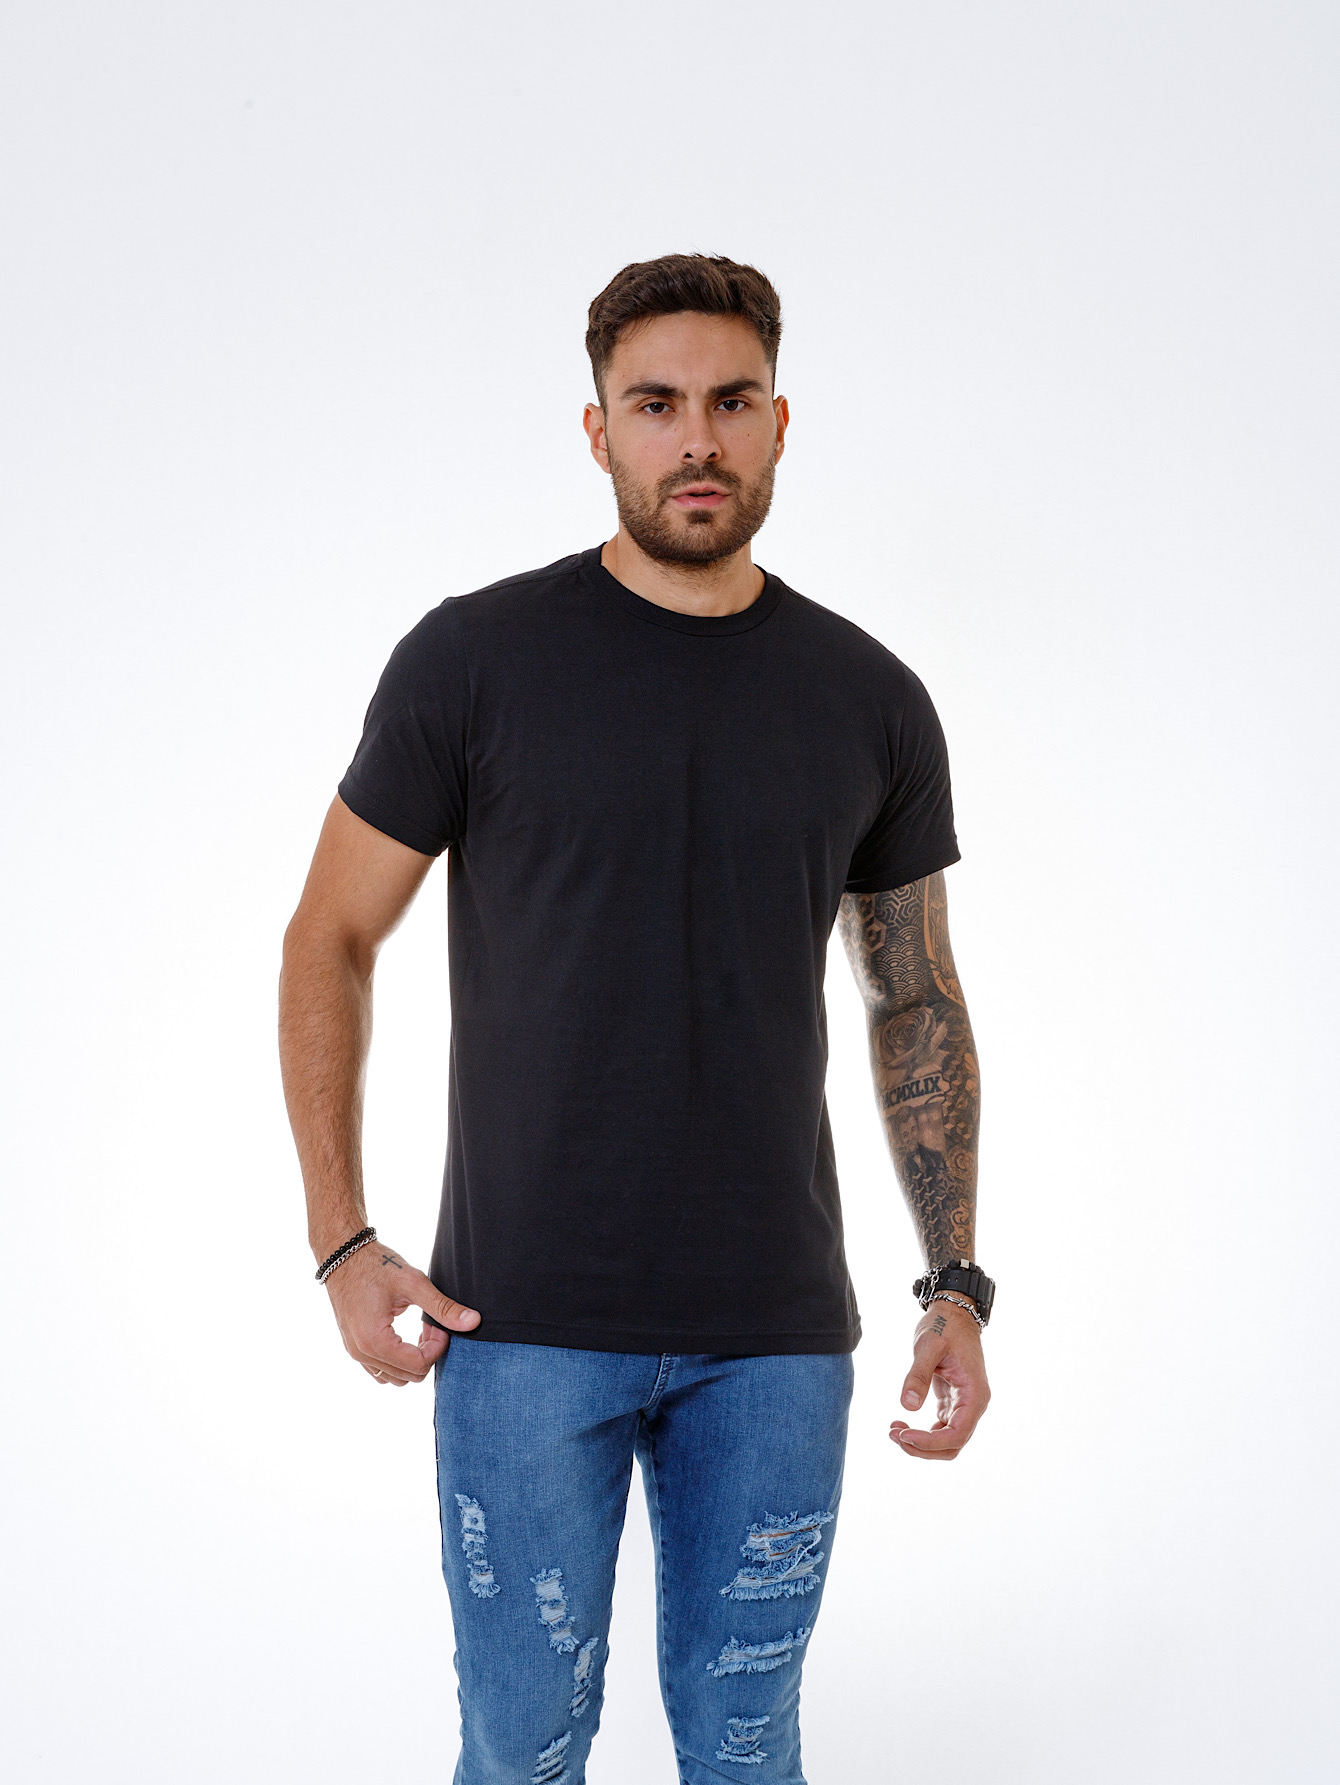 Camiseta Masculina - Básica Algodão - Preta - DAZE MODAS